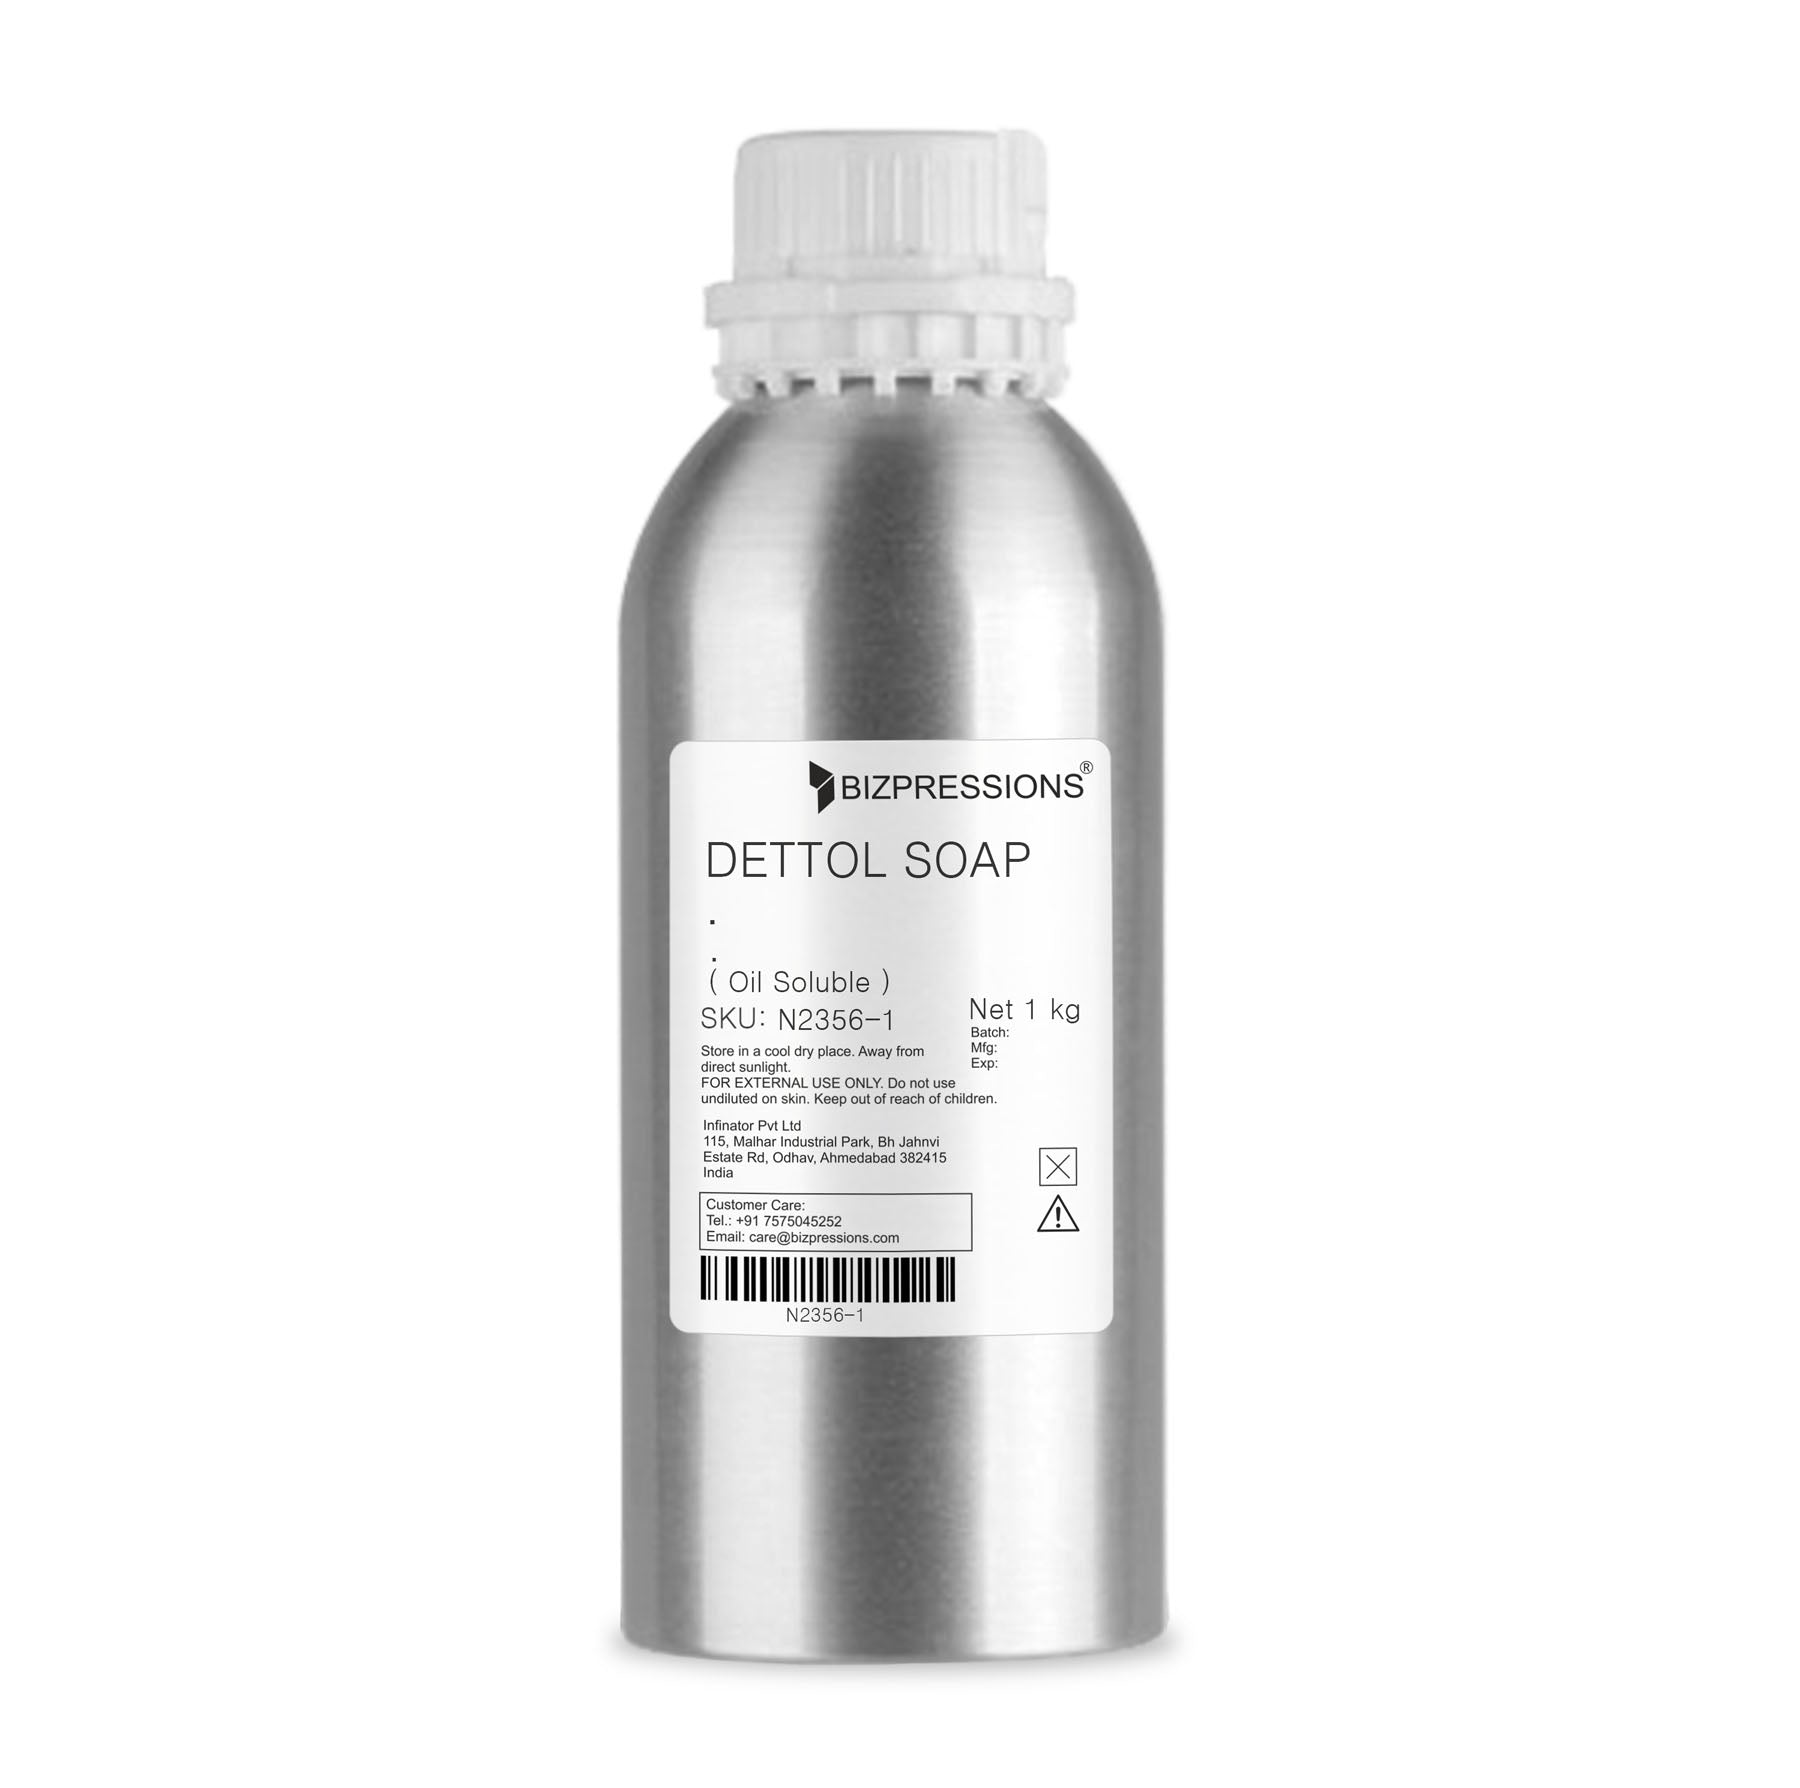 DETTOL SOAP - Fragrance ( Oil Soluble ) - 1 kg